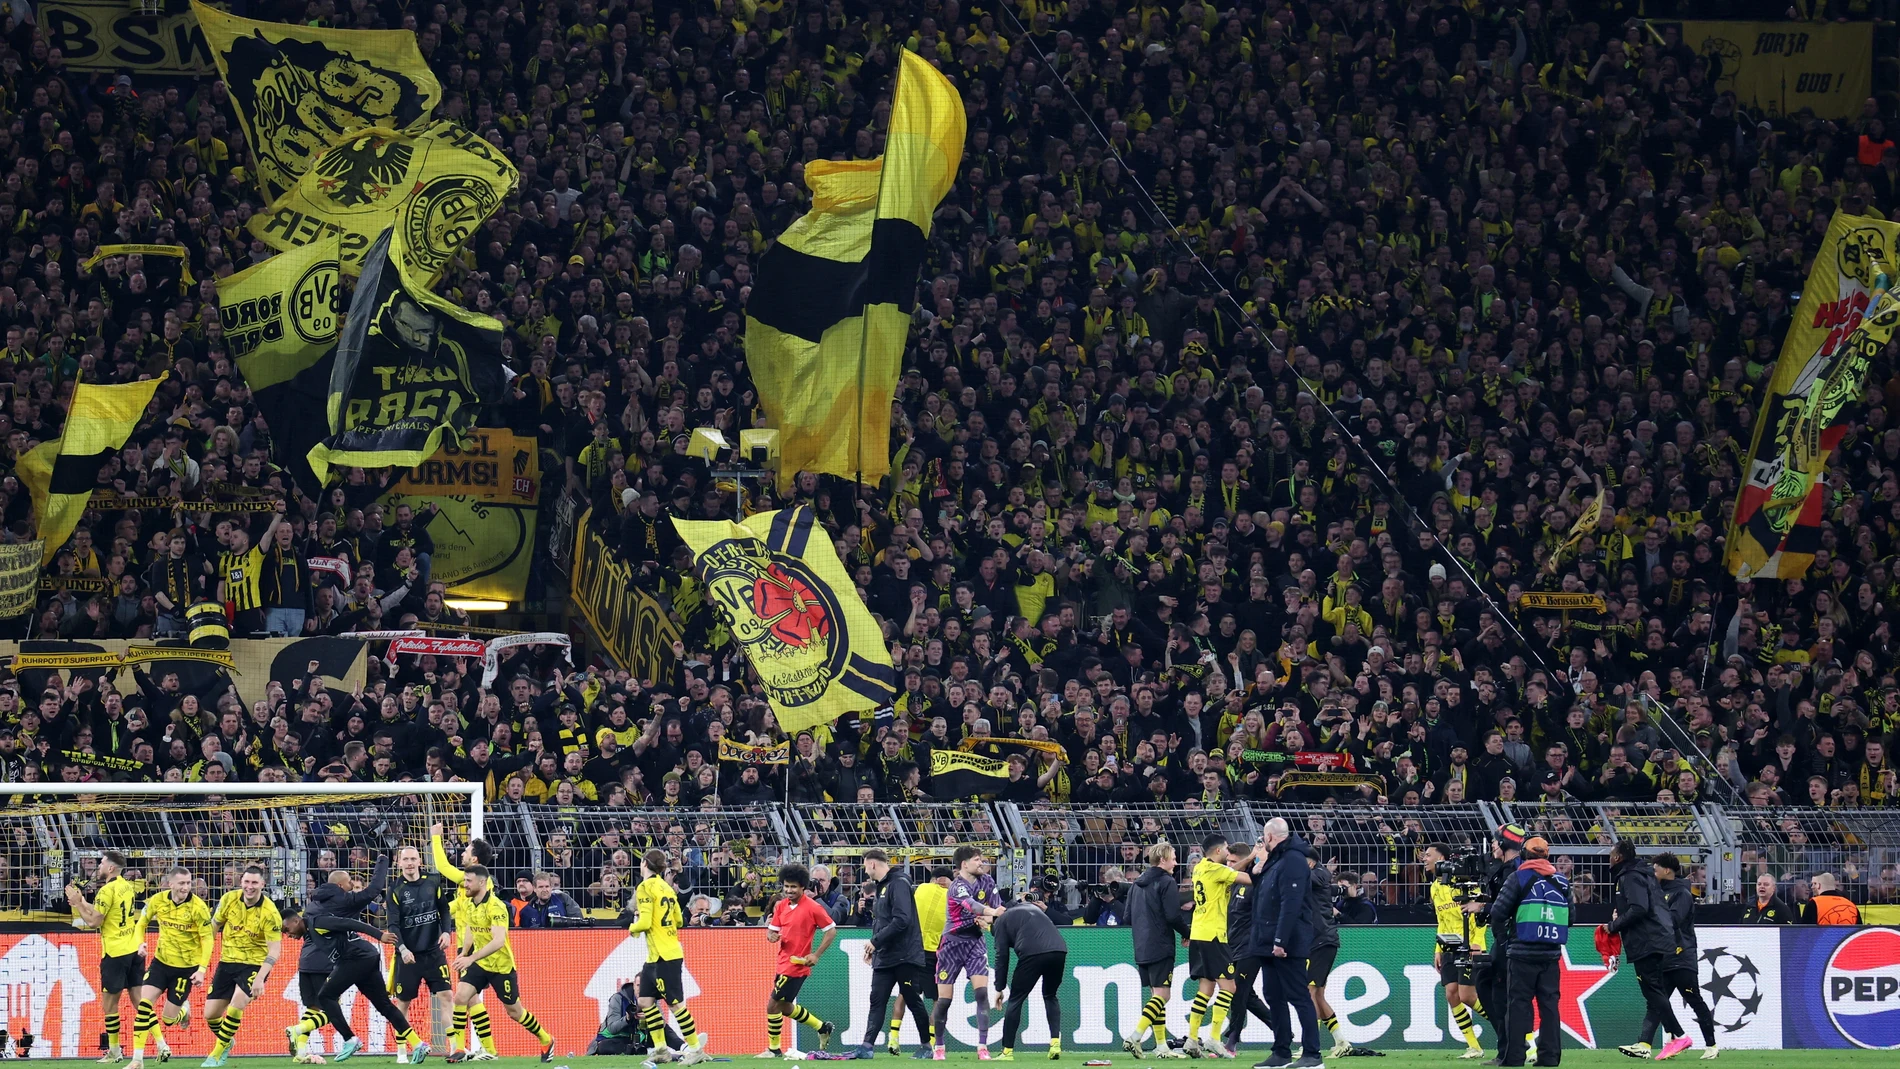 El Atlético padecerá el "Muro amarillo" en la vuelta en Dortmund